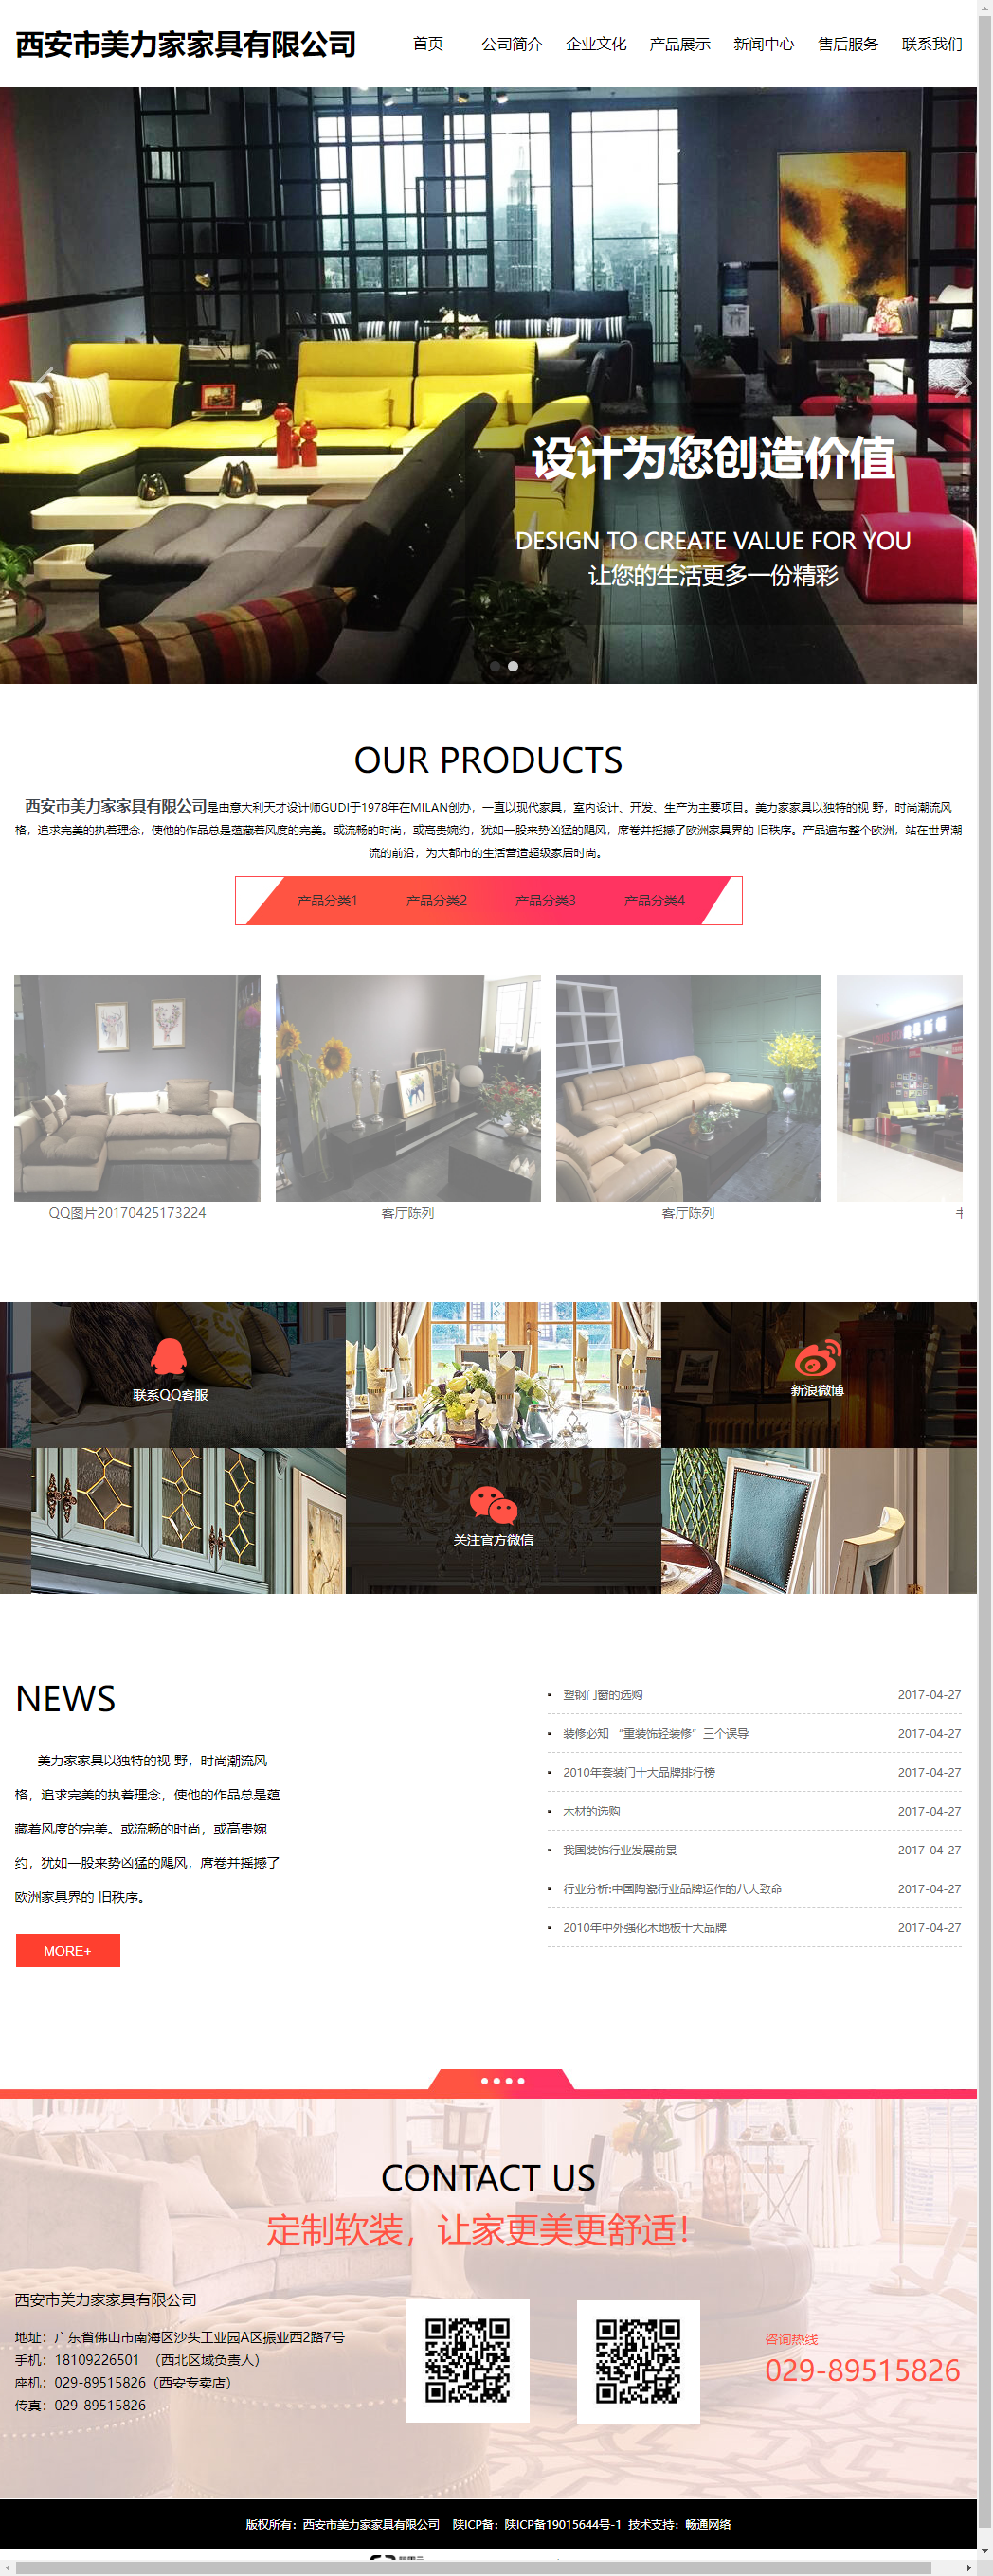 西安市美力家家具有限公司网站案例